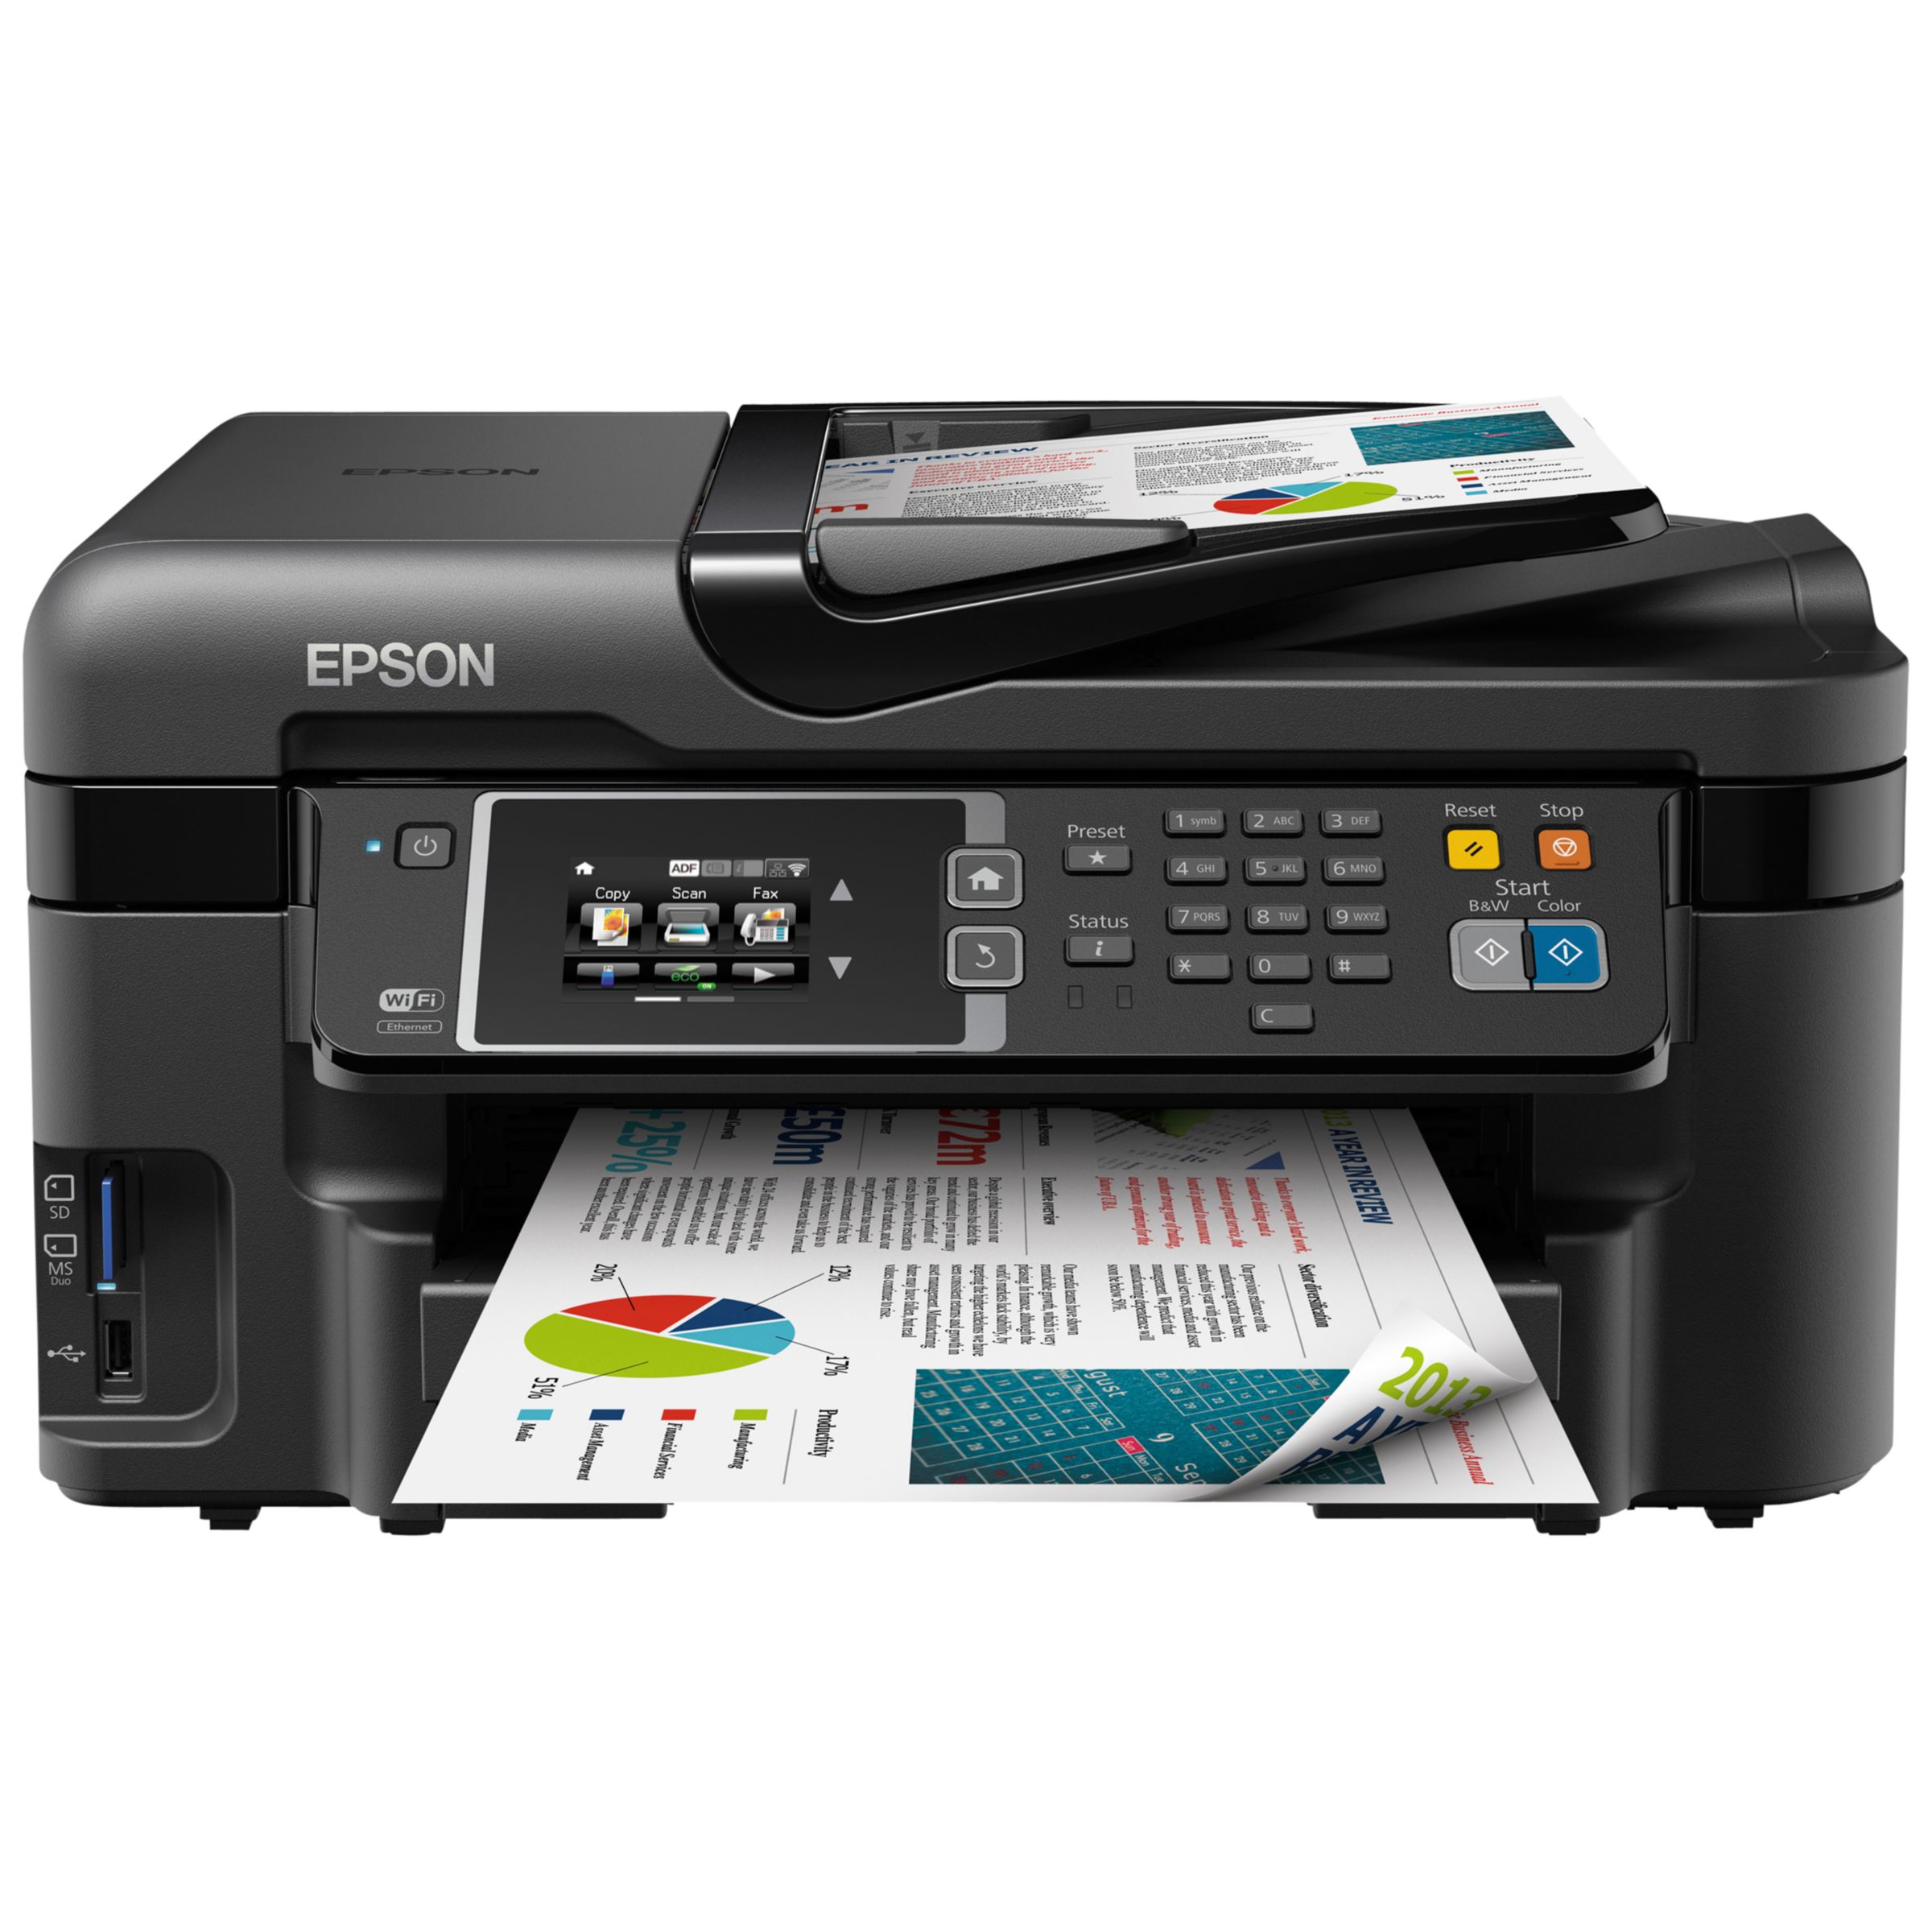 Epson WorkForce WF-3620 Wireless Printer, Black